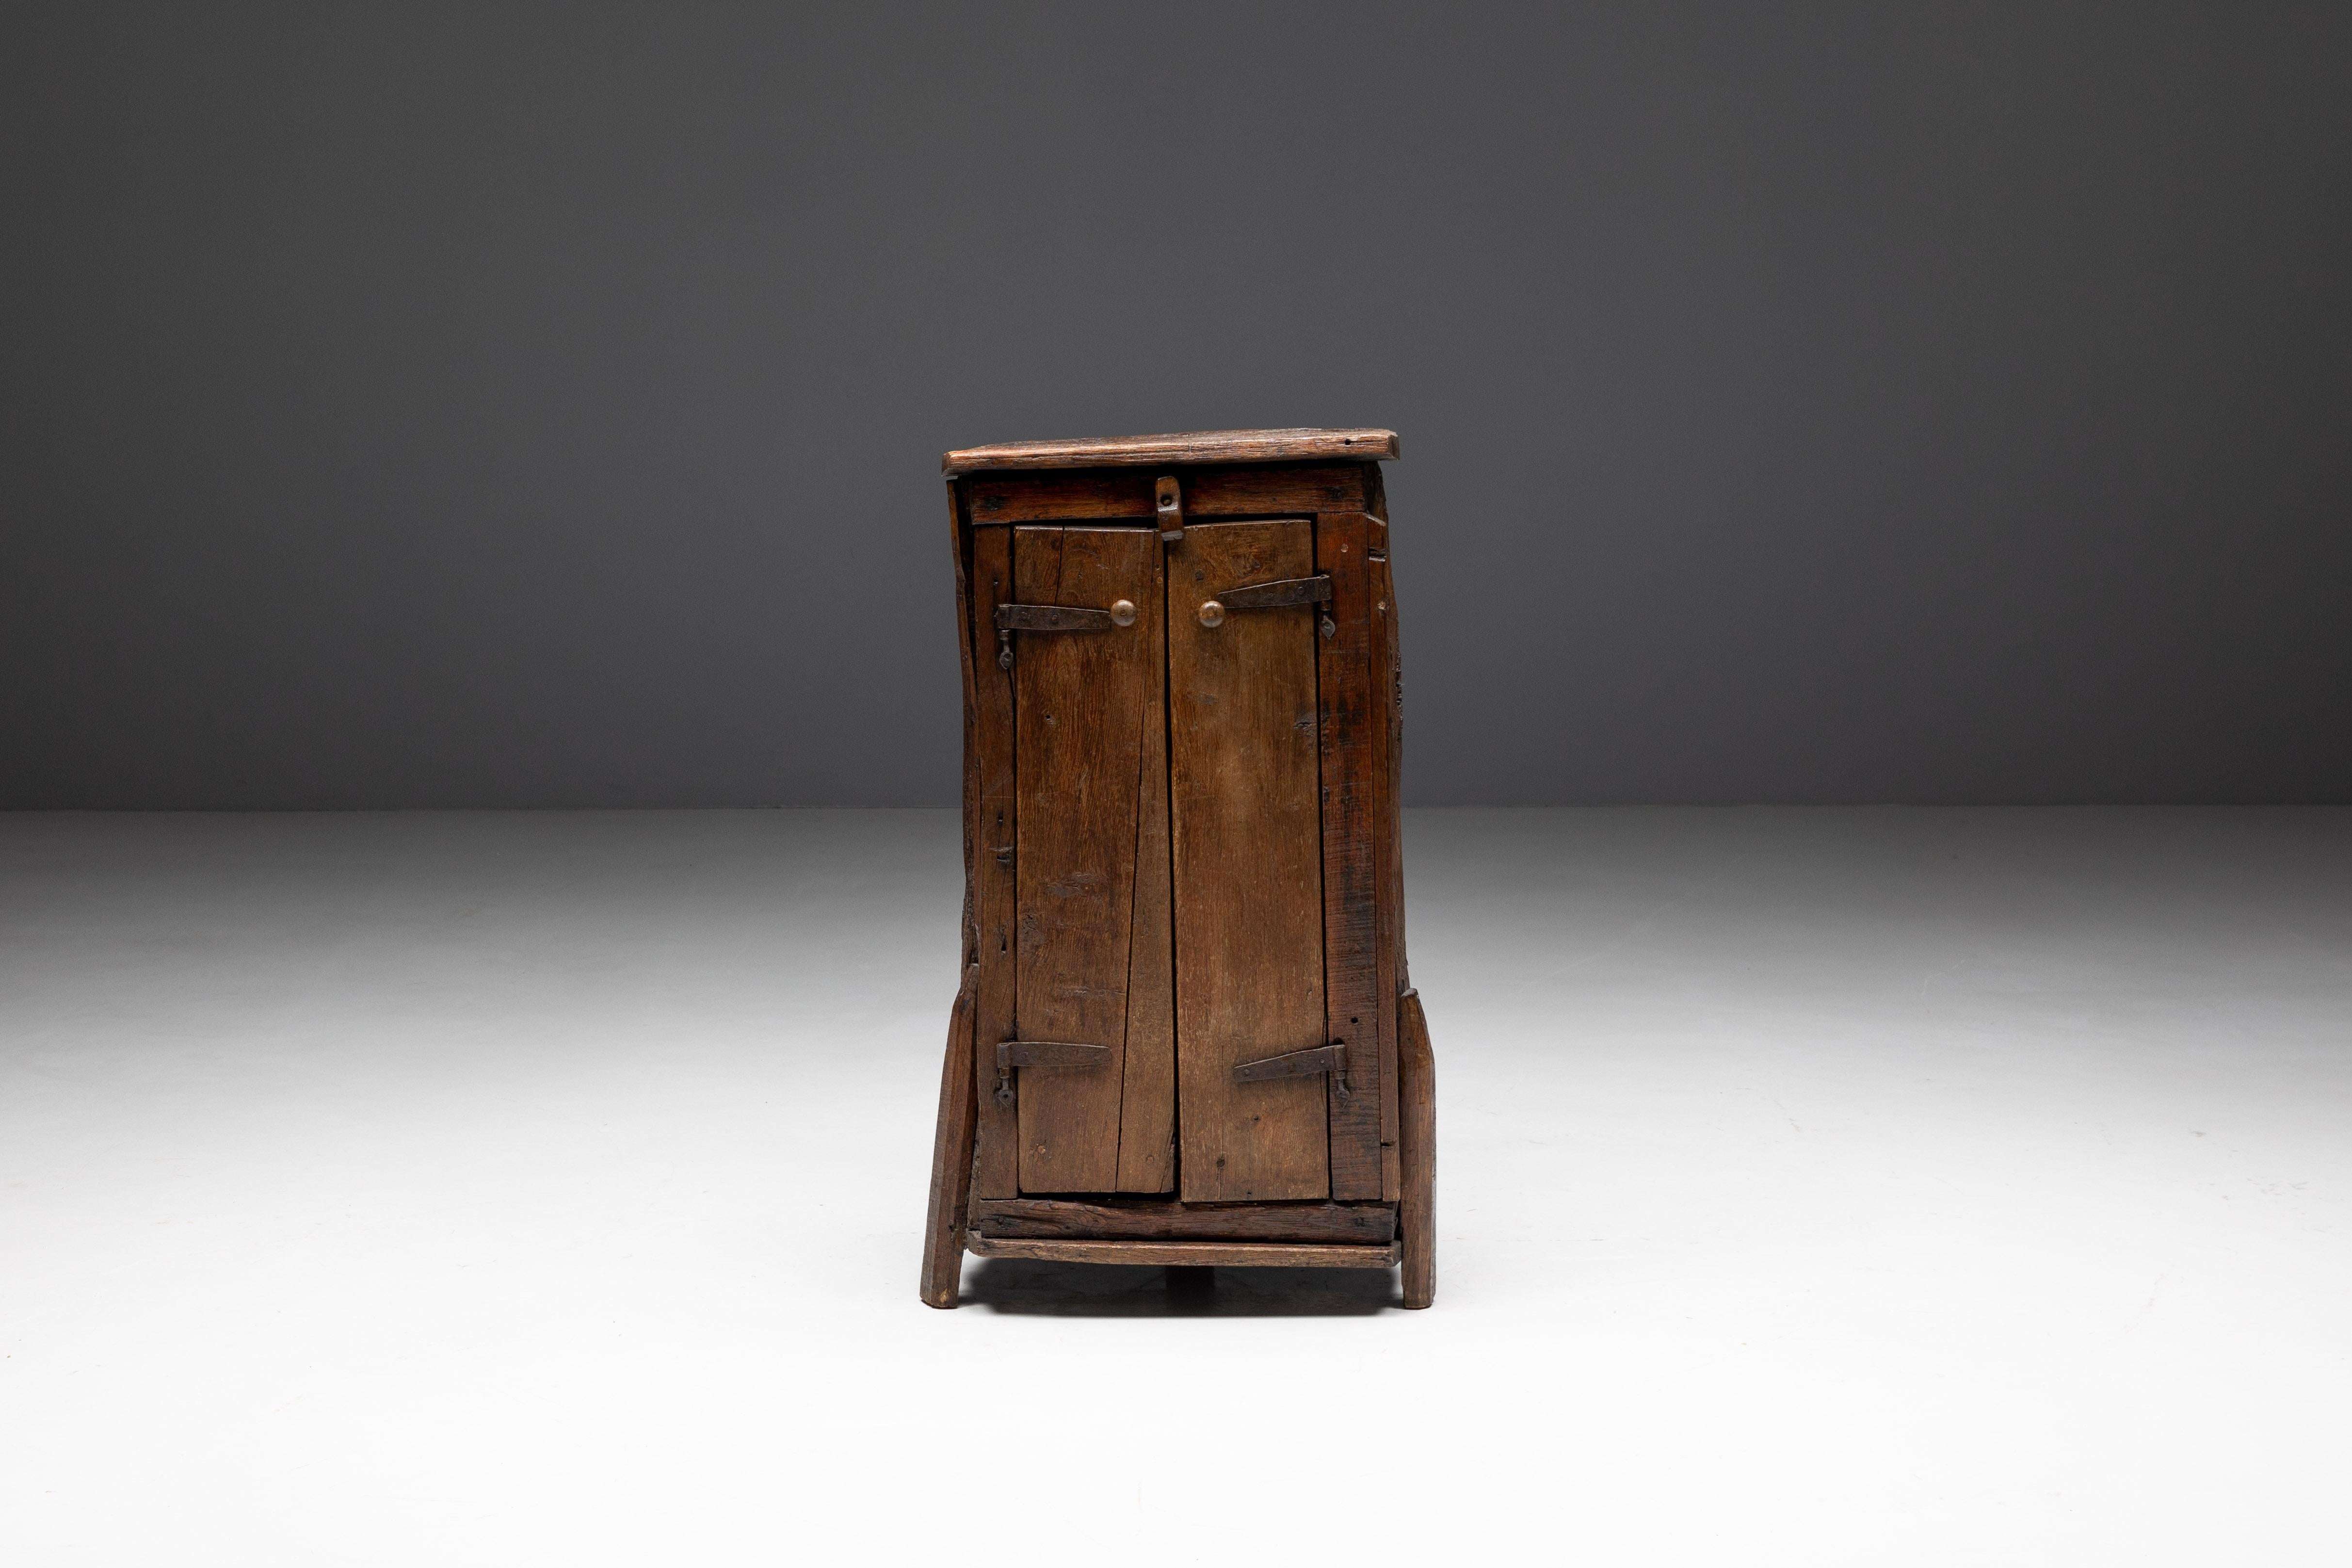 Der rustikale Monoxylit-Schrank aus dem Dänemark des 19. Jahrhunderts zeigt die zeitlose Handwerkskunst dieser Epoche. Die Massivholzkonstruktion und die einzigartige Monoxylit-Rückwand bieten nicht nur großzügigen Stauraum und